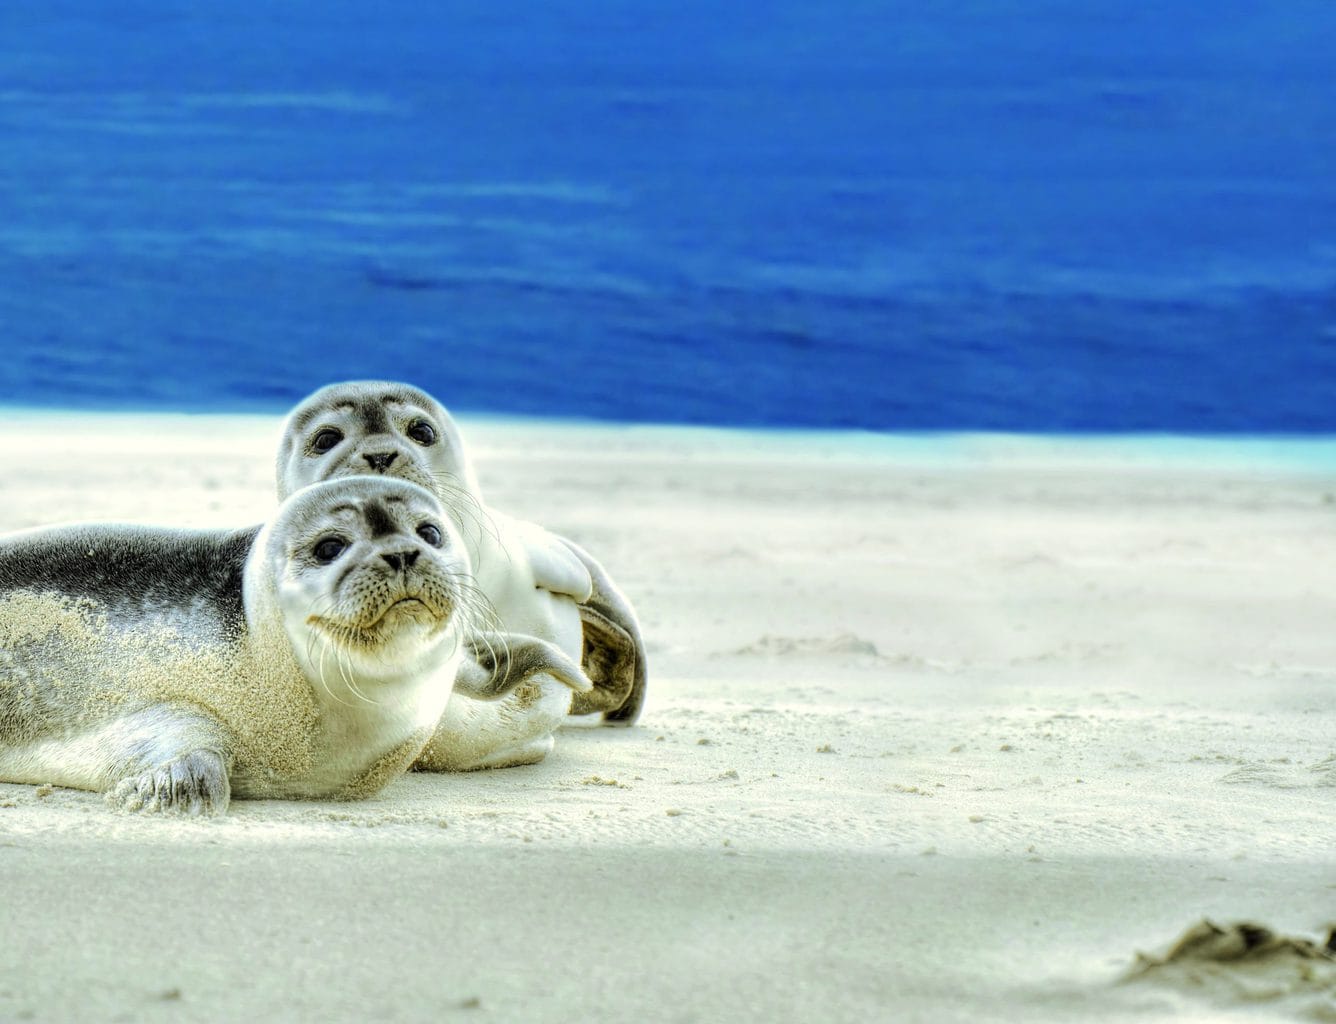 Zeehonden op een zandbank bij Noordzeeieland Spiekeroog